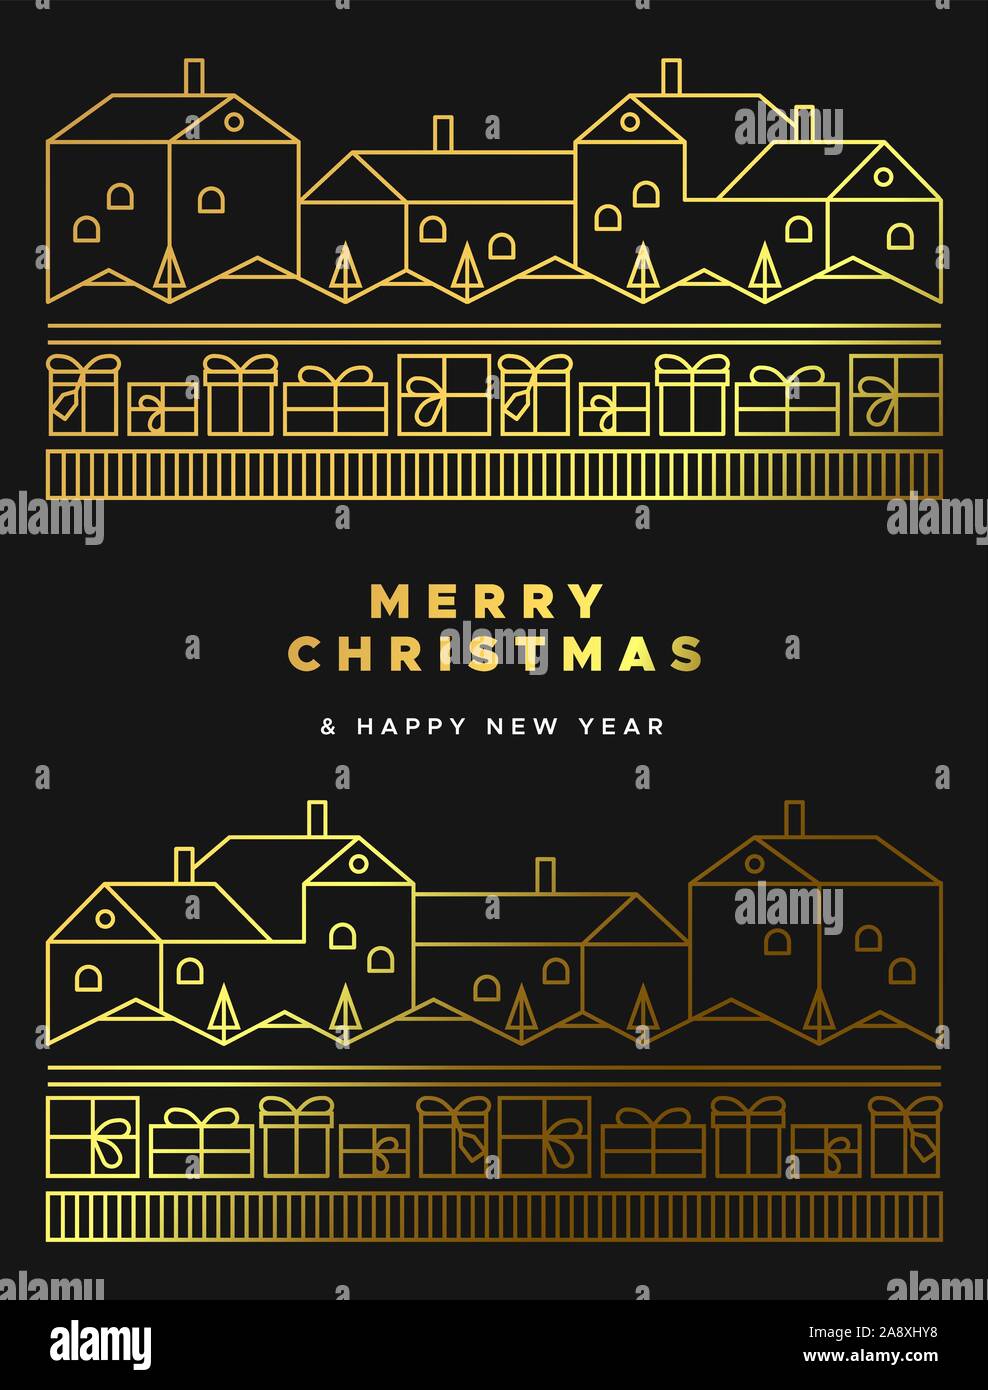 Auguri di Buon Natale felice anno nuovo biglietto di auguri illustrazione di luxury gold paesaggio invernale con le case, confezione regalo e una foresta di alberi di pino in linea geometrica Illustrazione Vettoriale